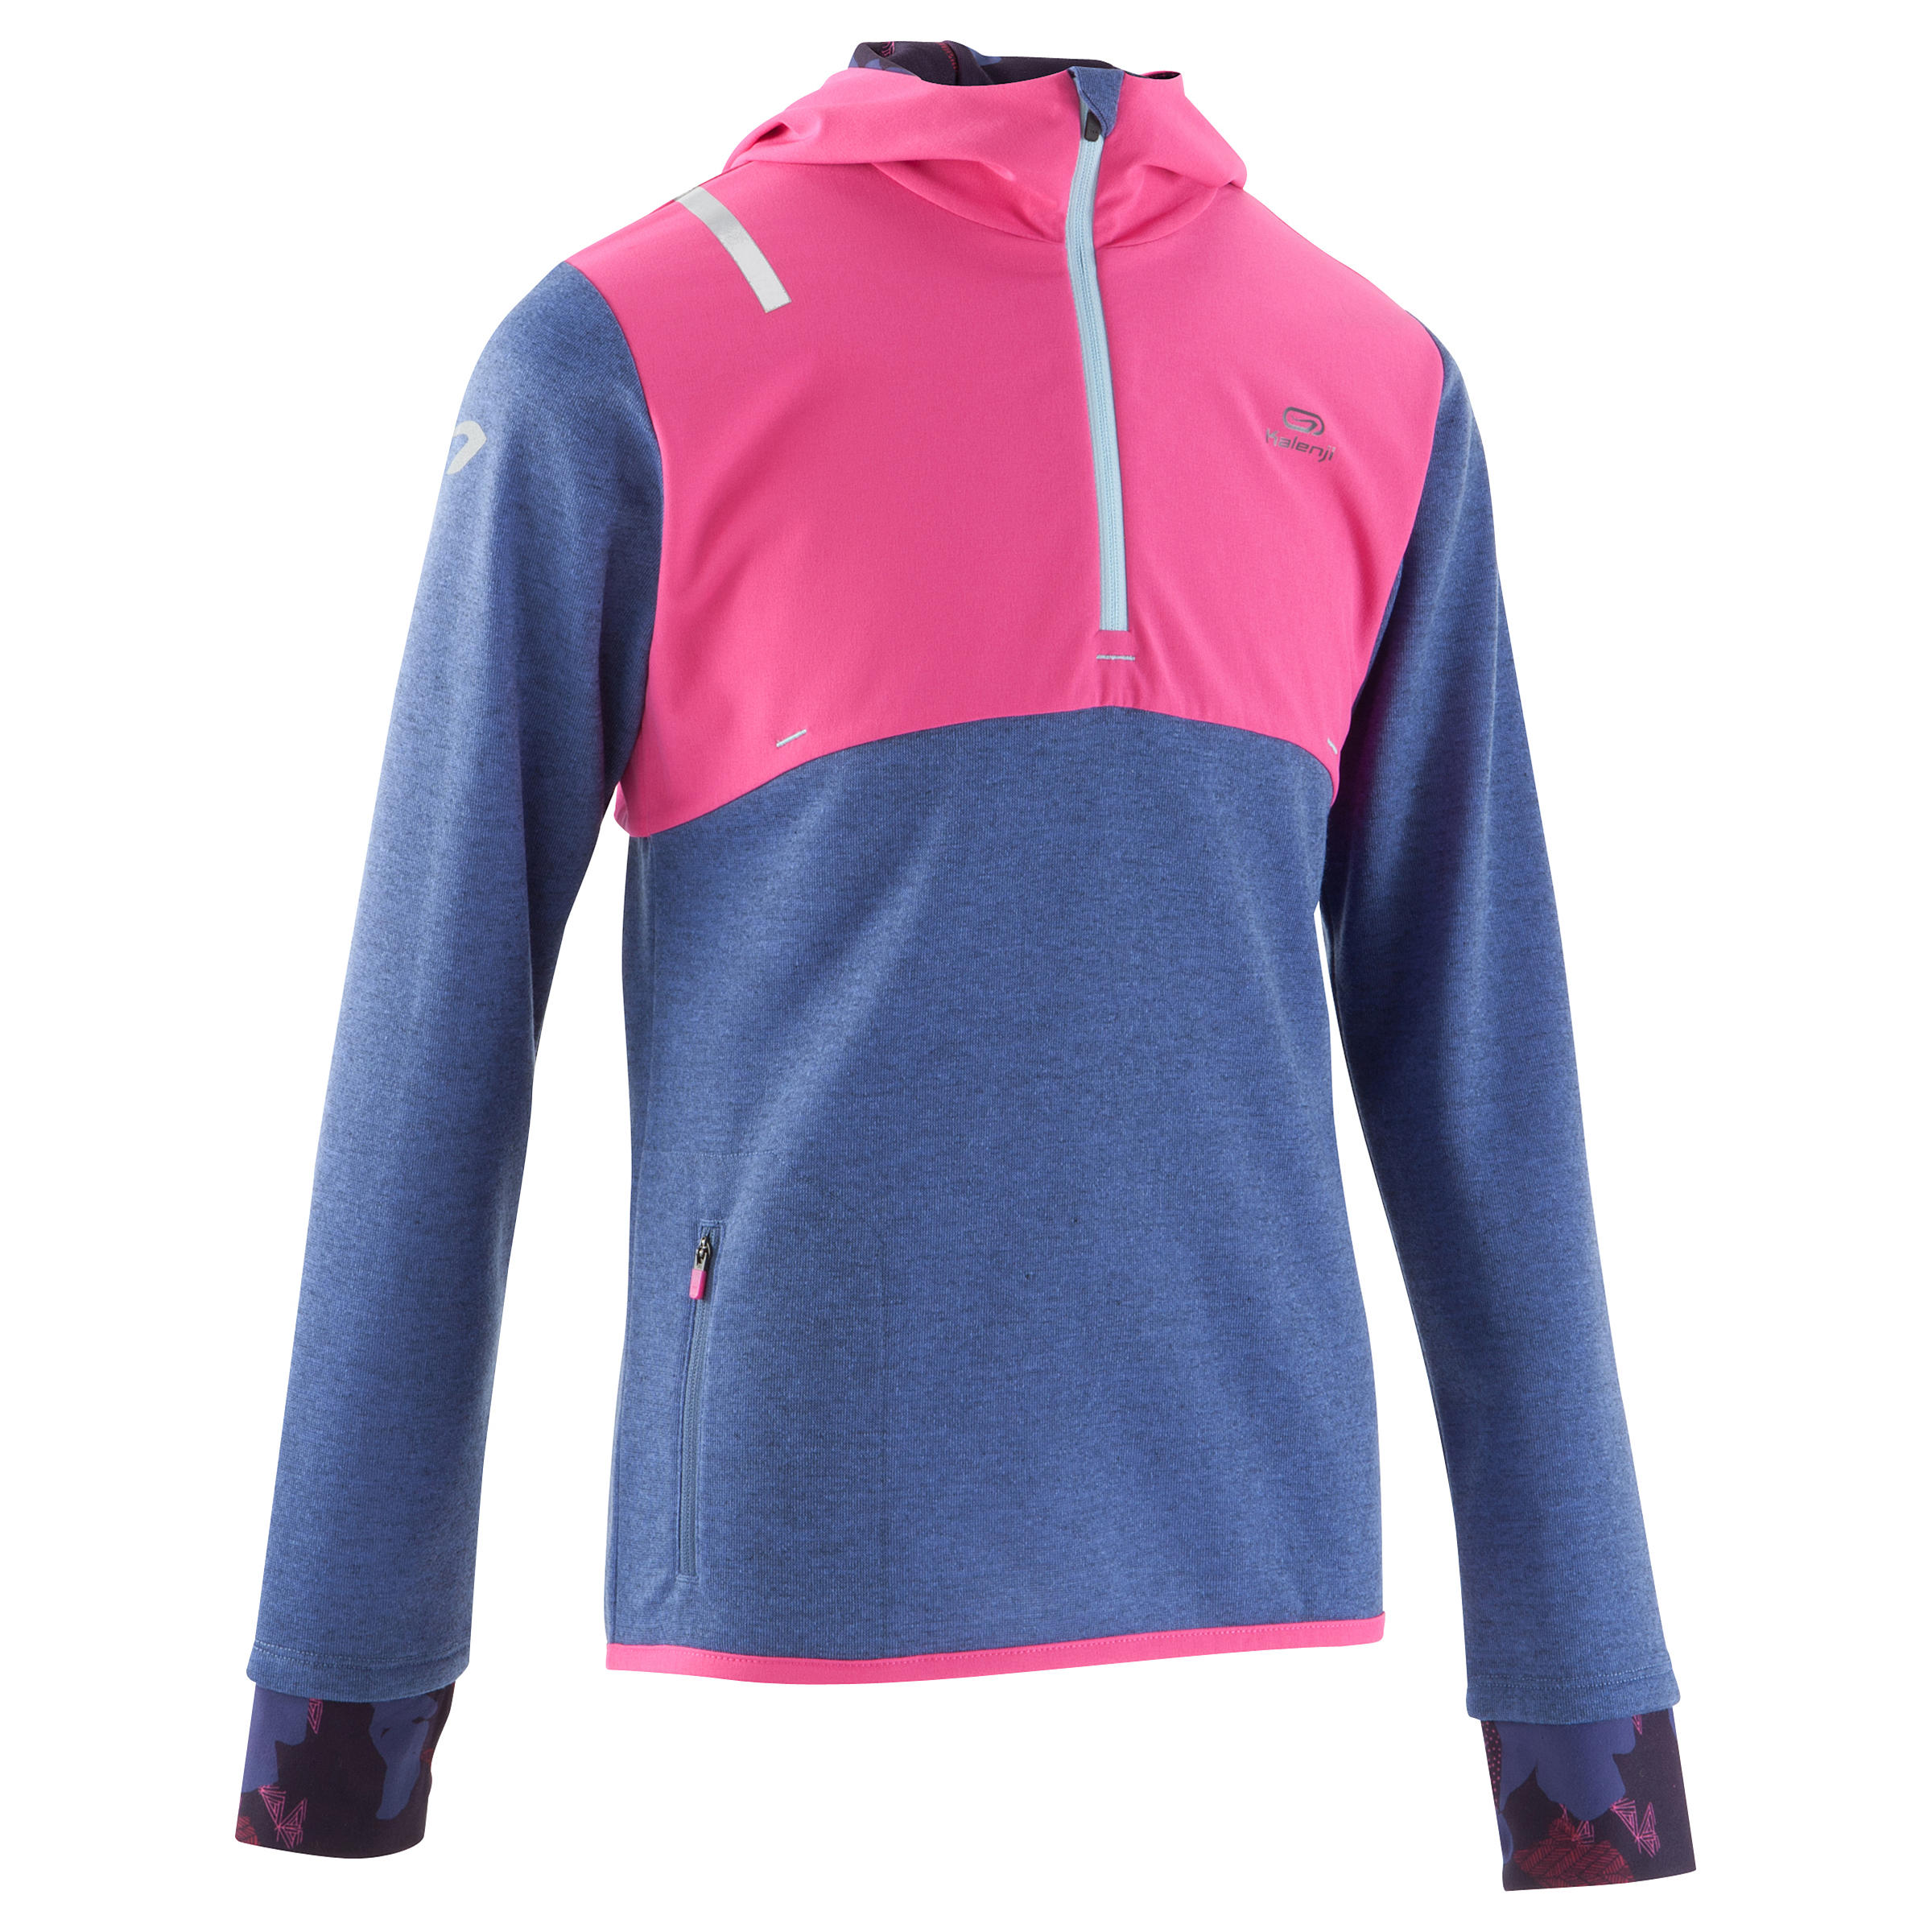 Elio Children's Running Hooded Jersey - Pink/Blue
 1/16